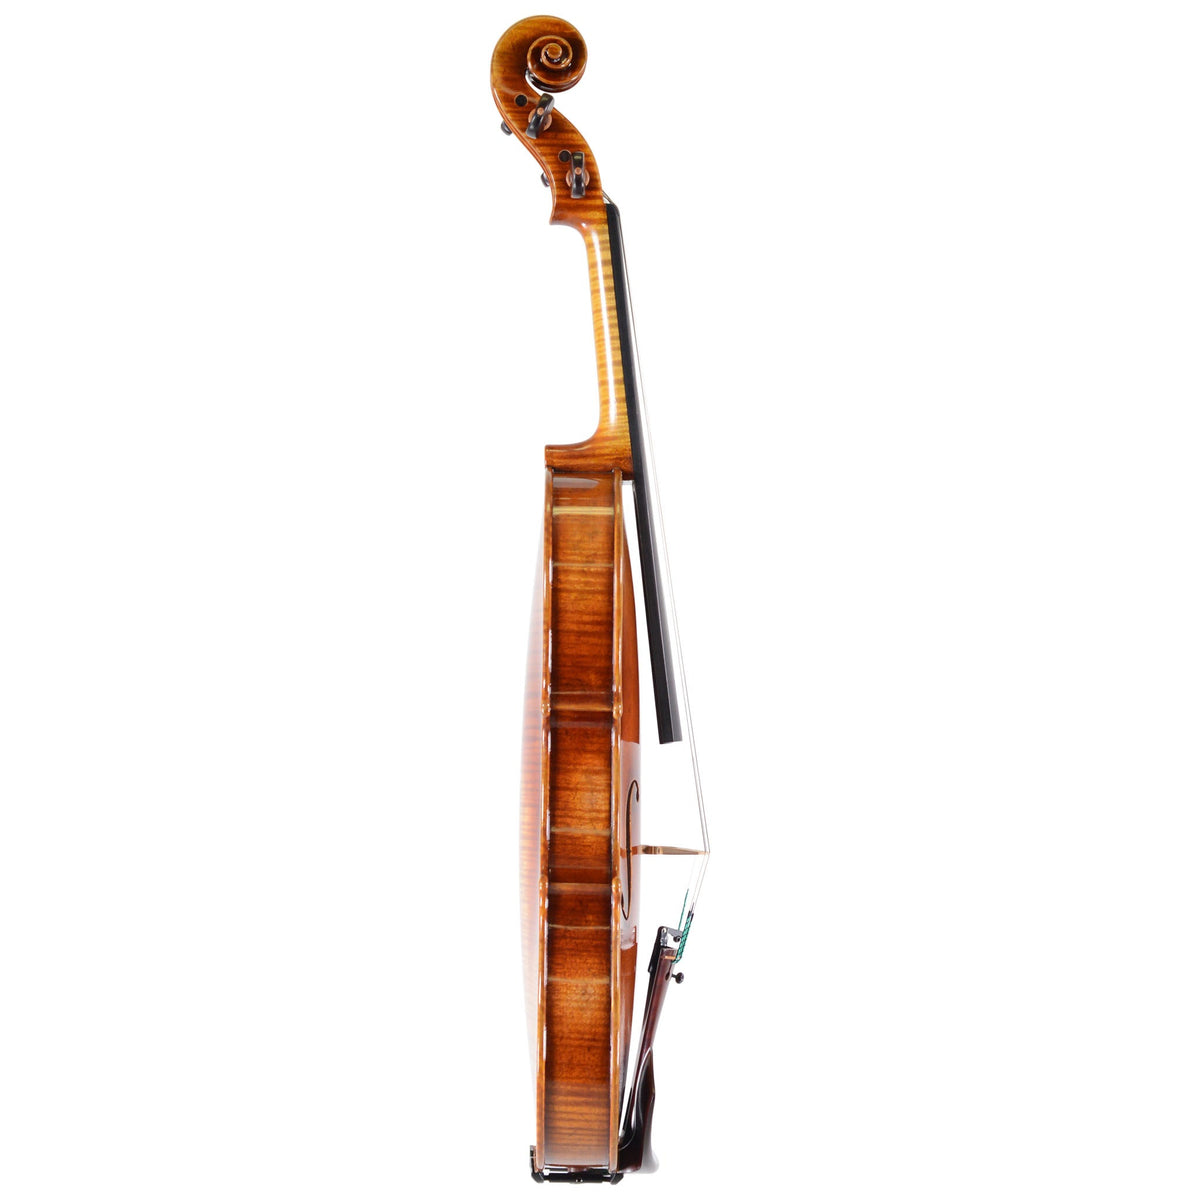 B-stock Ming Jiang Zhu 925 Violin